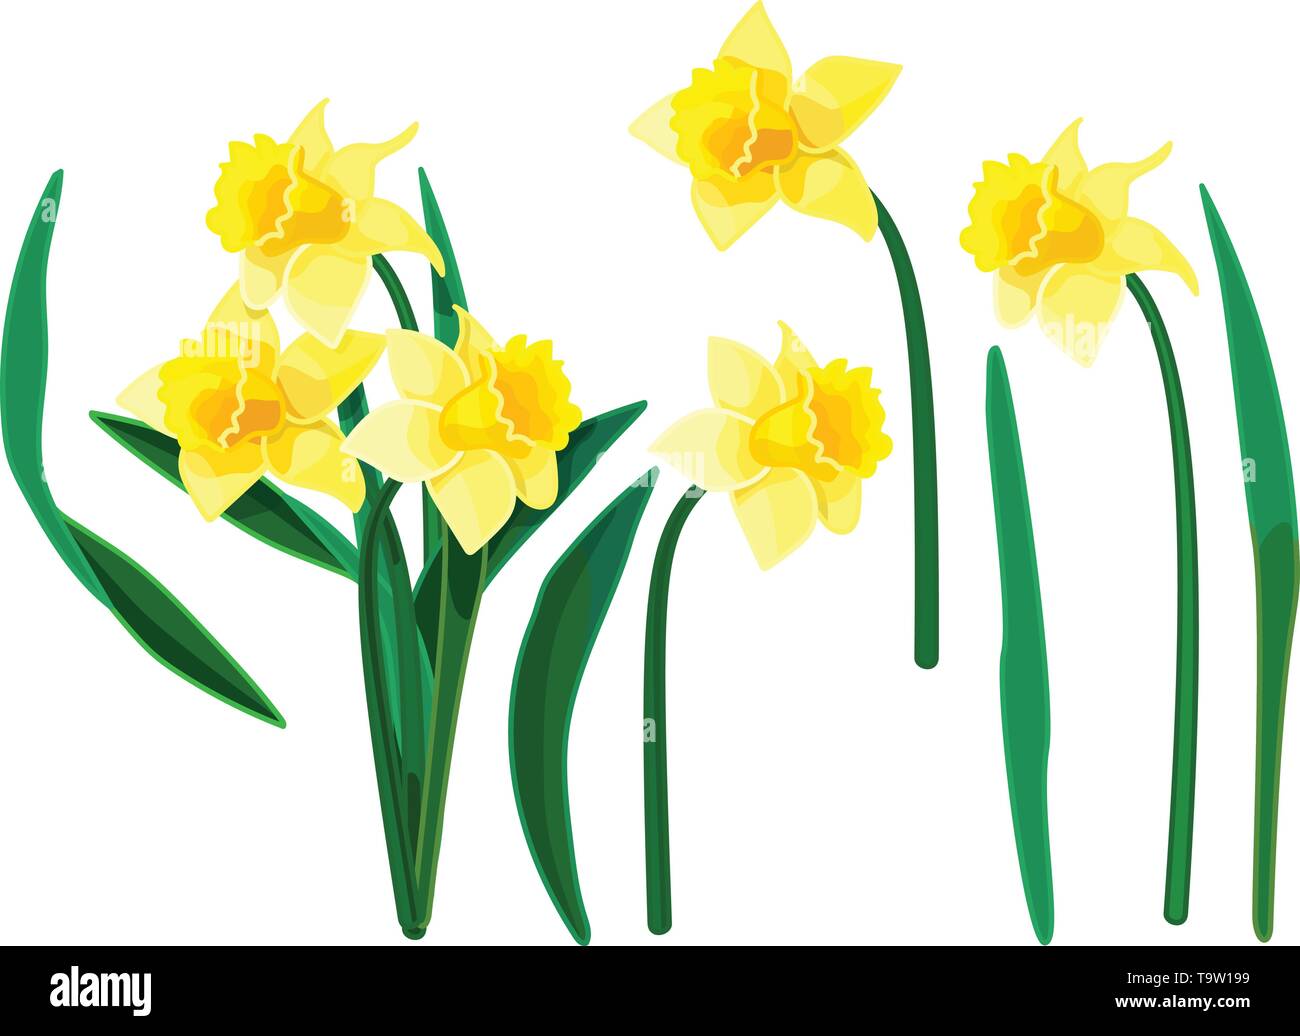 vector cartoon plants nature clip art. Narcissus set Stock Vector Image ...